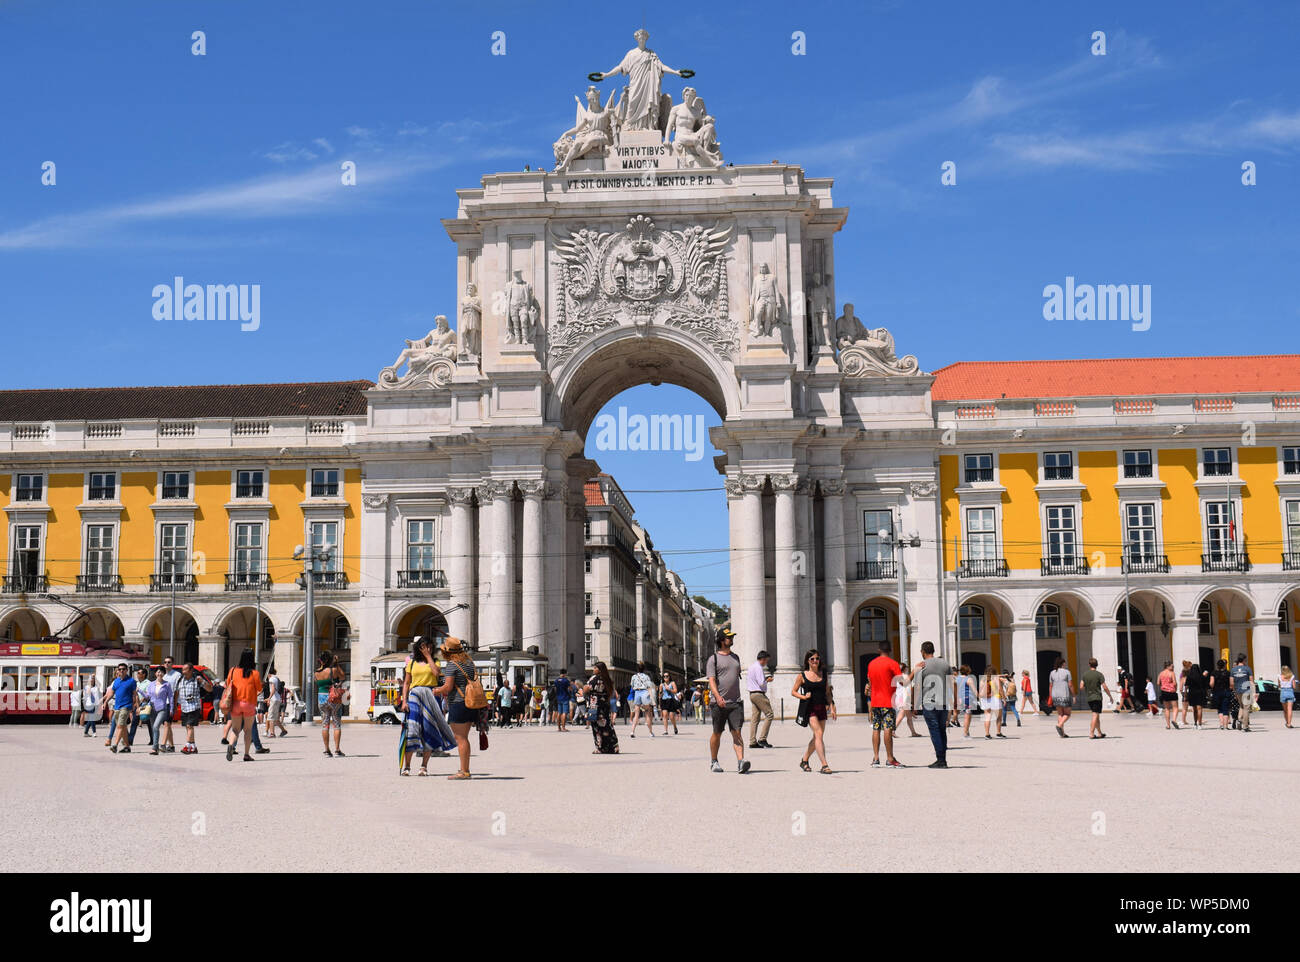 Una vista di Lisbona dell'Arco de Rua Augusta preso mentre in piedi in piazza commerciale, noto come Praça do Comércio o Terreiro do Paço in portoghese Foto Stock